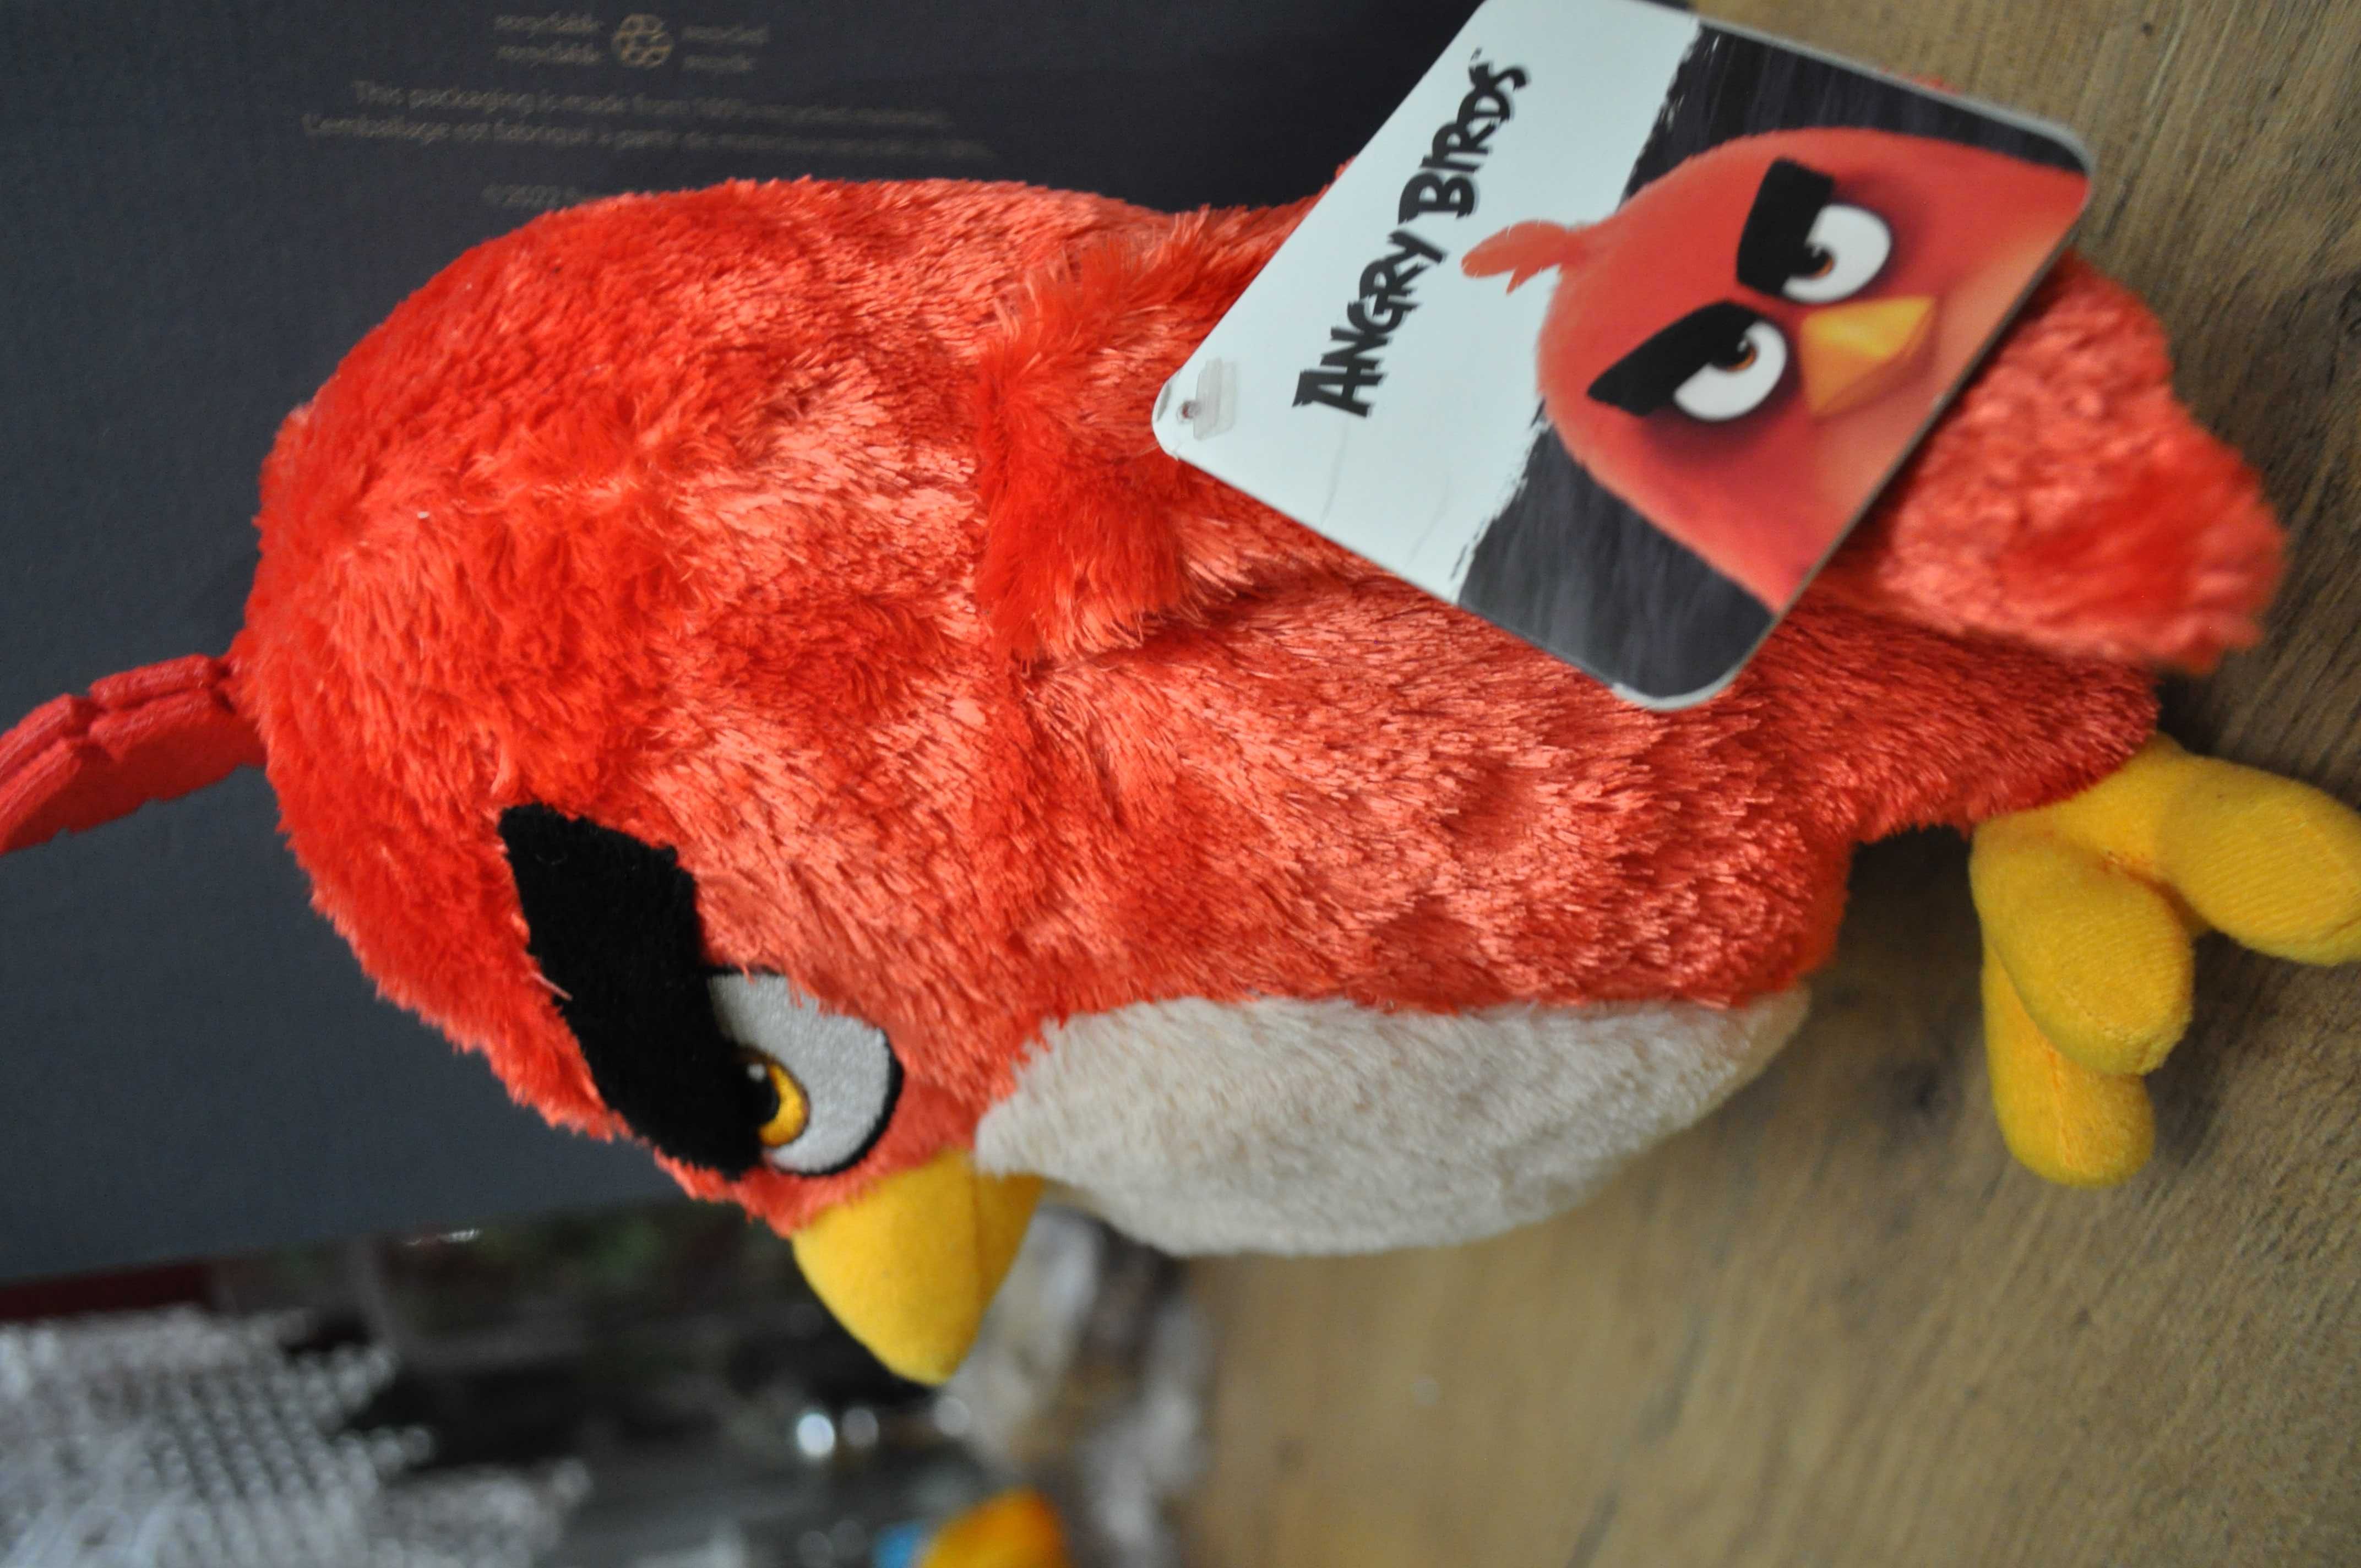 Nowa maskotka Angry Birds ok28cm